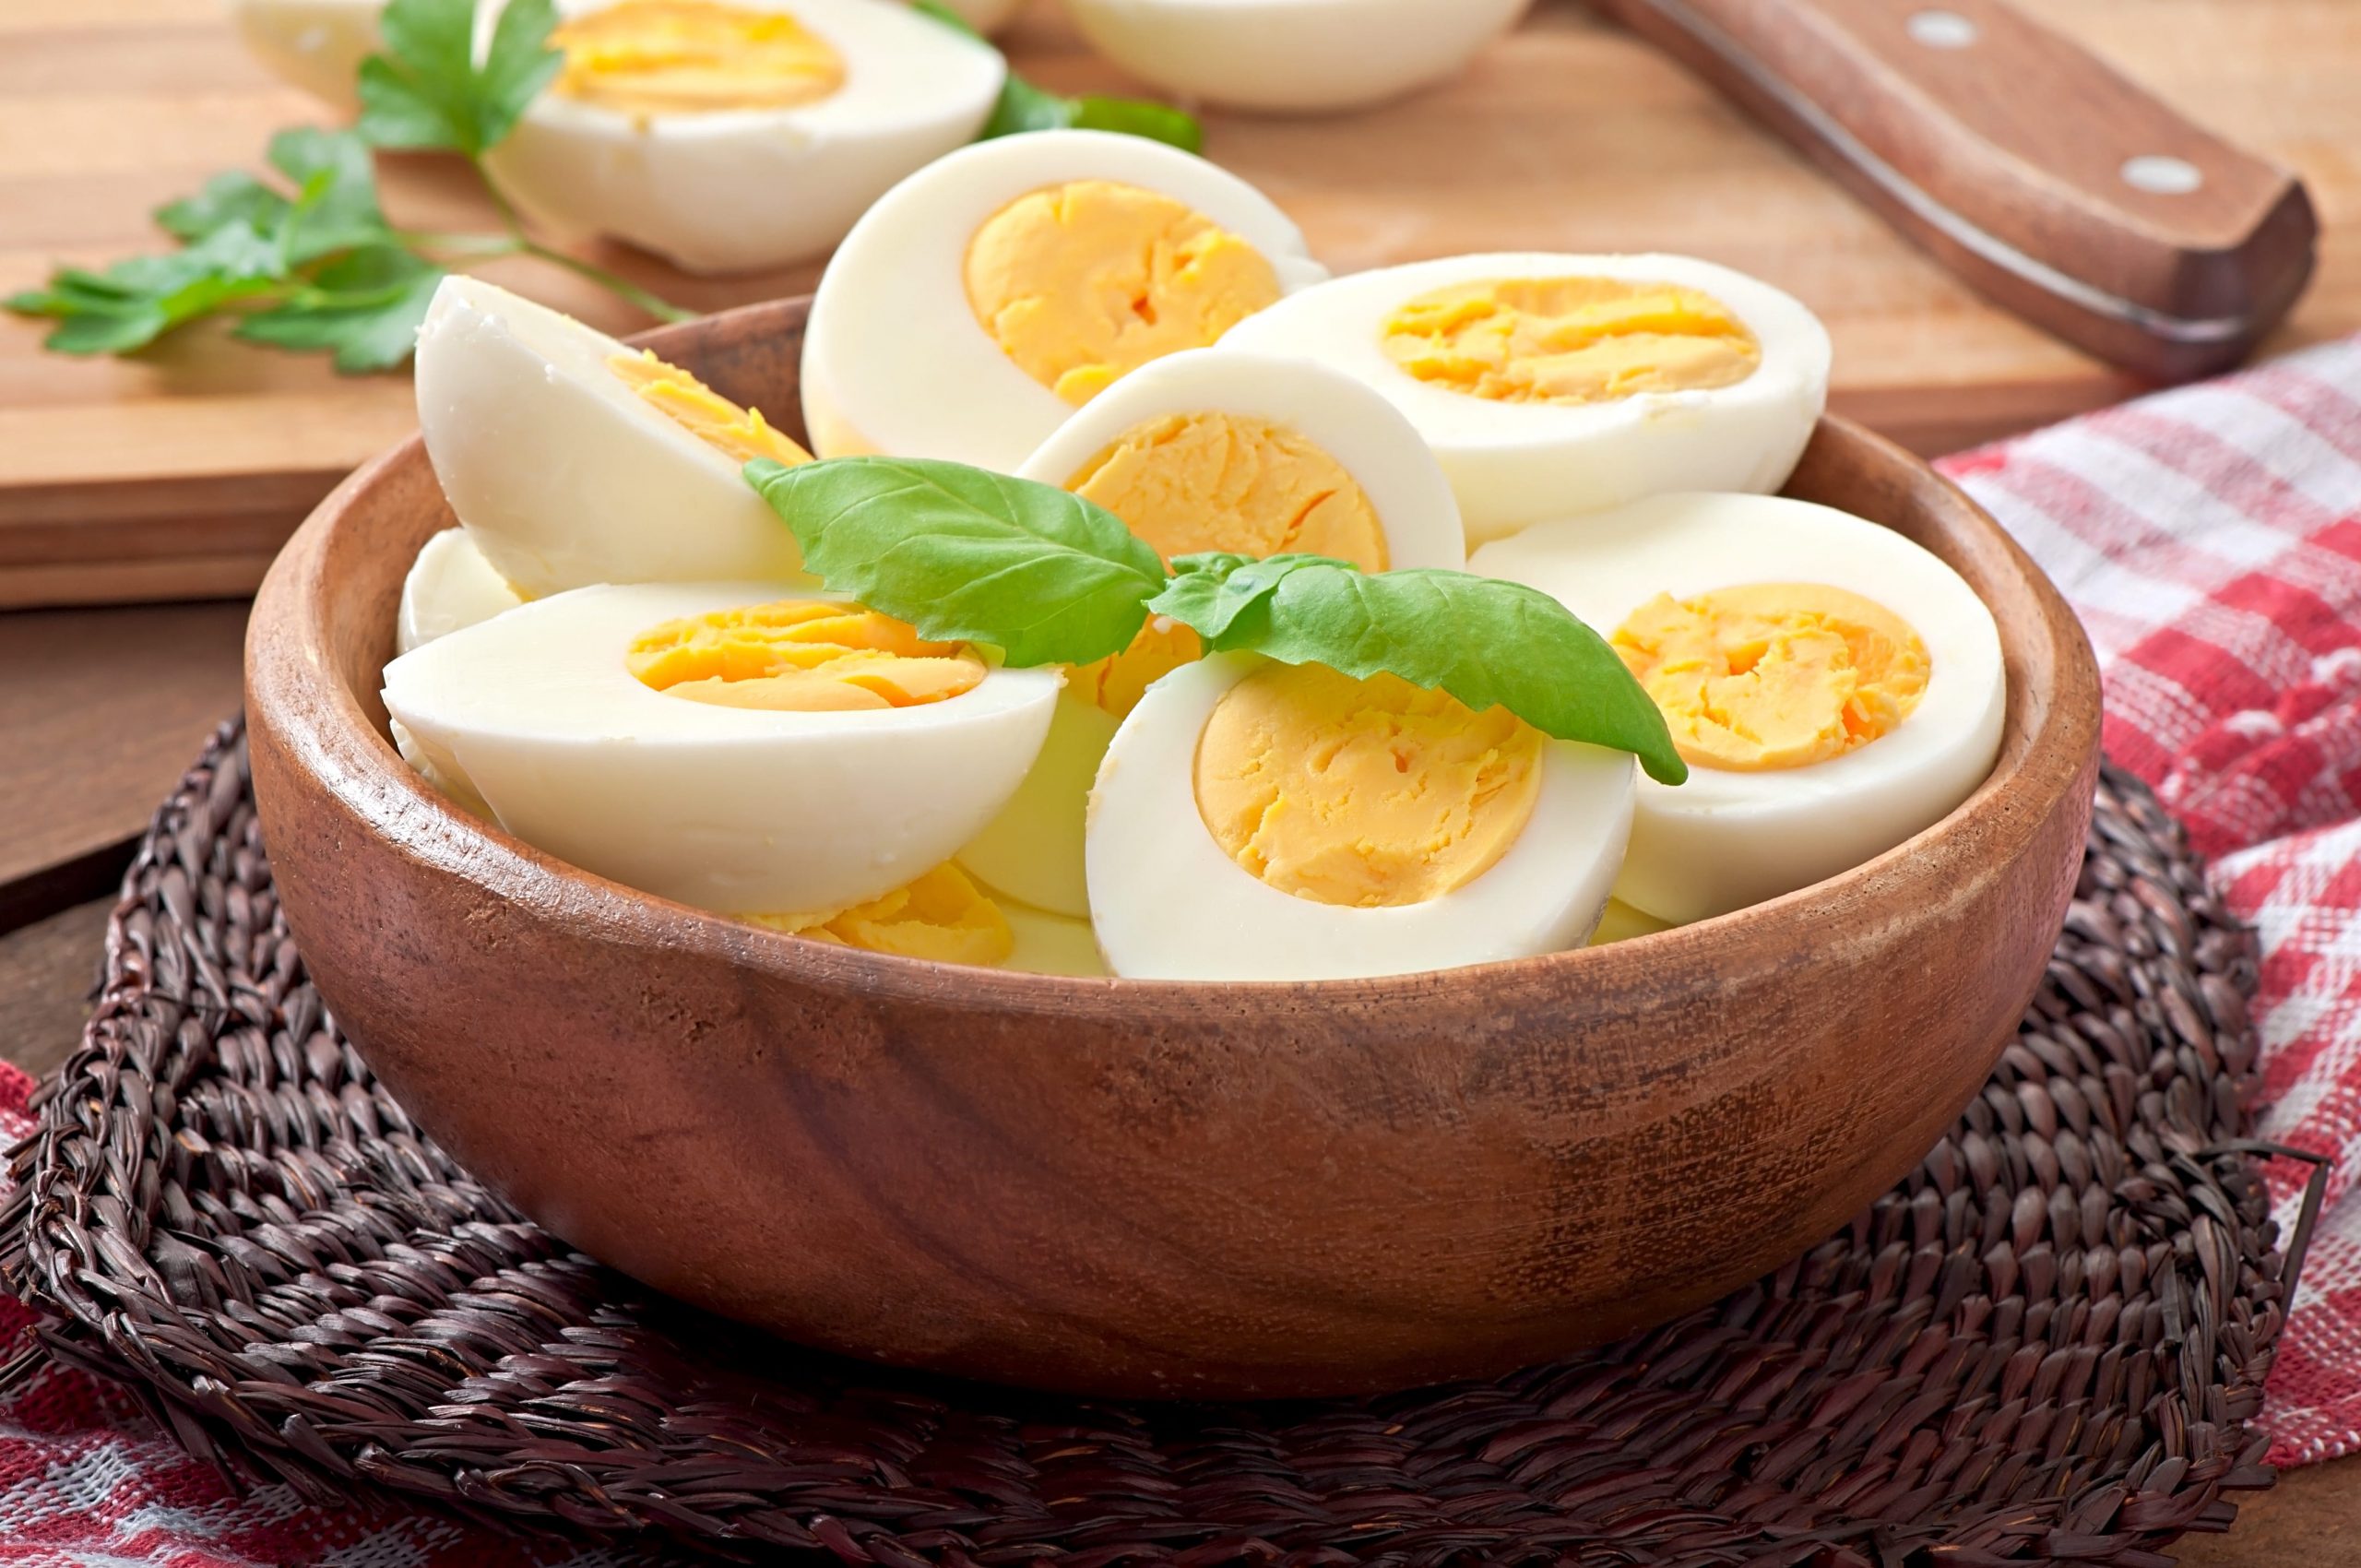 ביצים; מזון פנטסטי לירידה במשקל-טפט